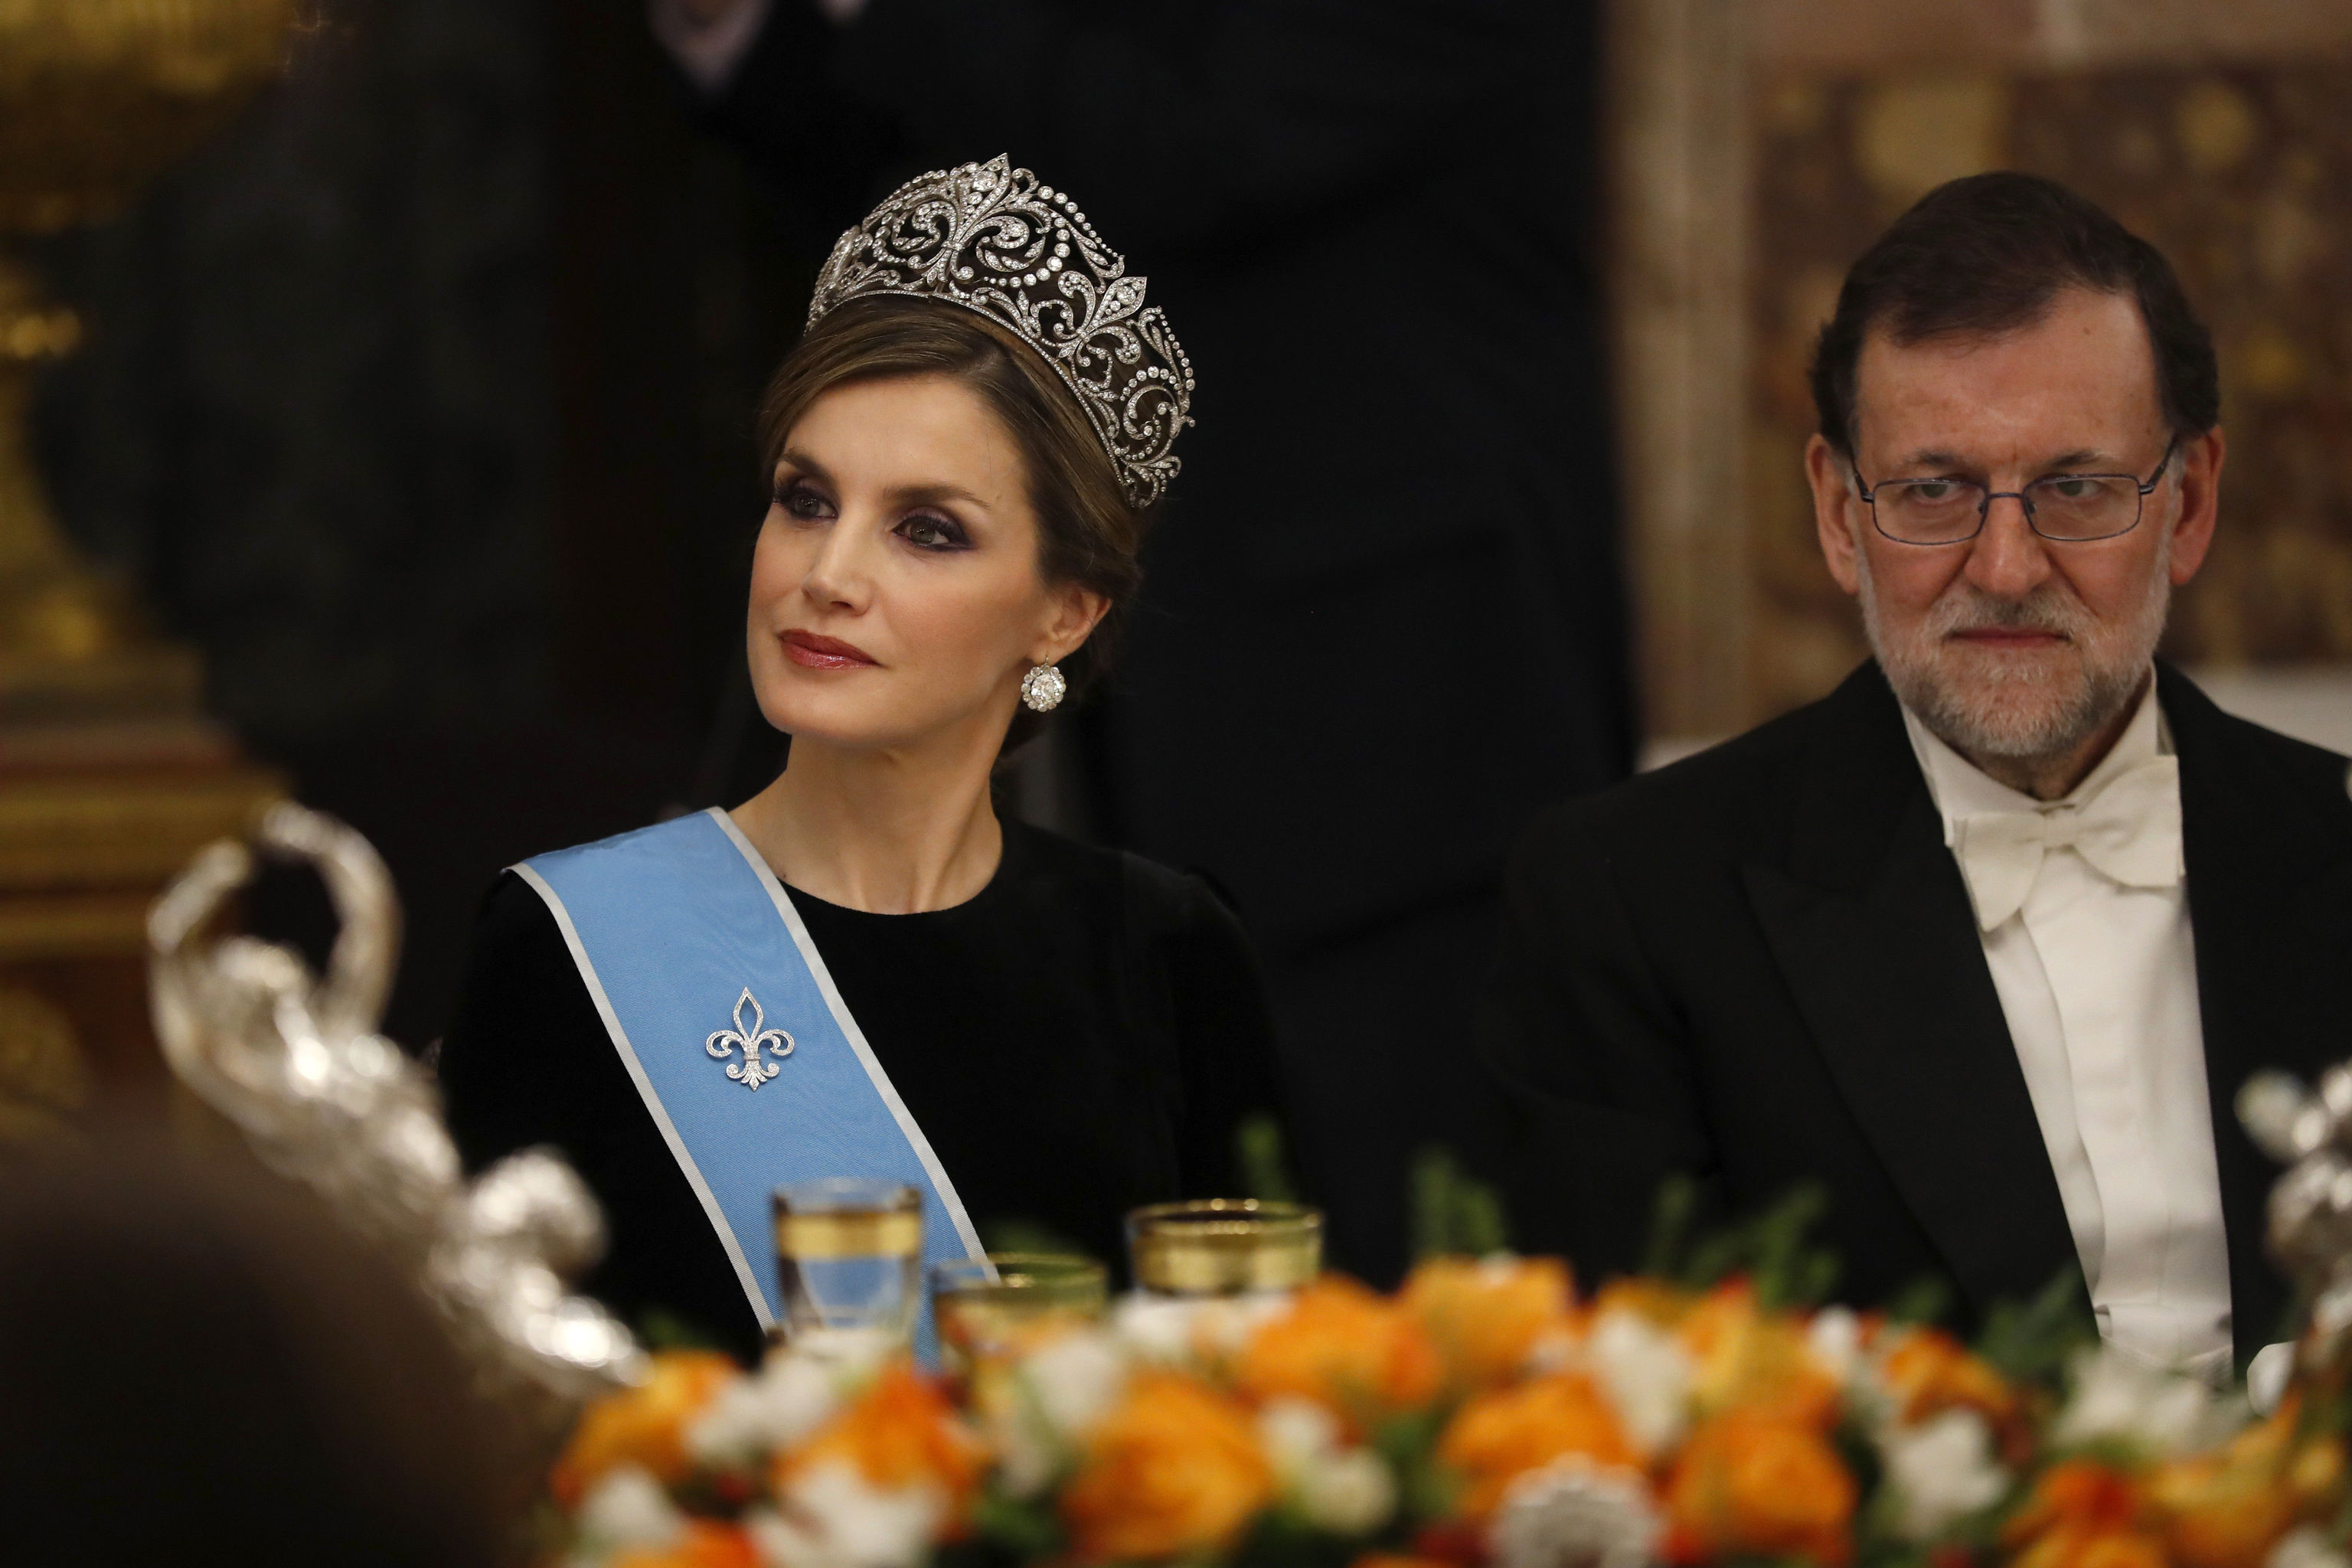 Doa Letizia con la tiara de Lis, una de las joyas "de pasar"